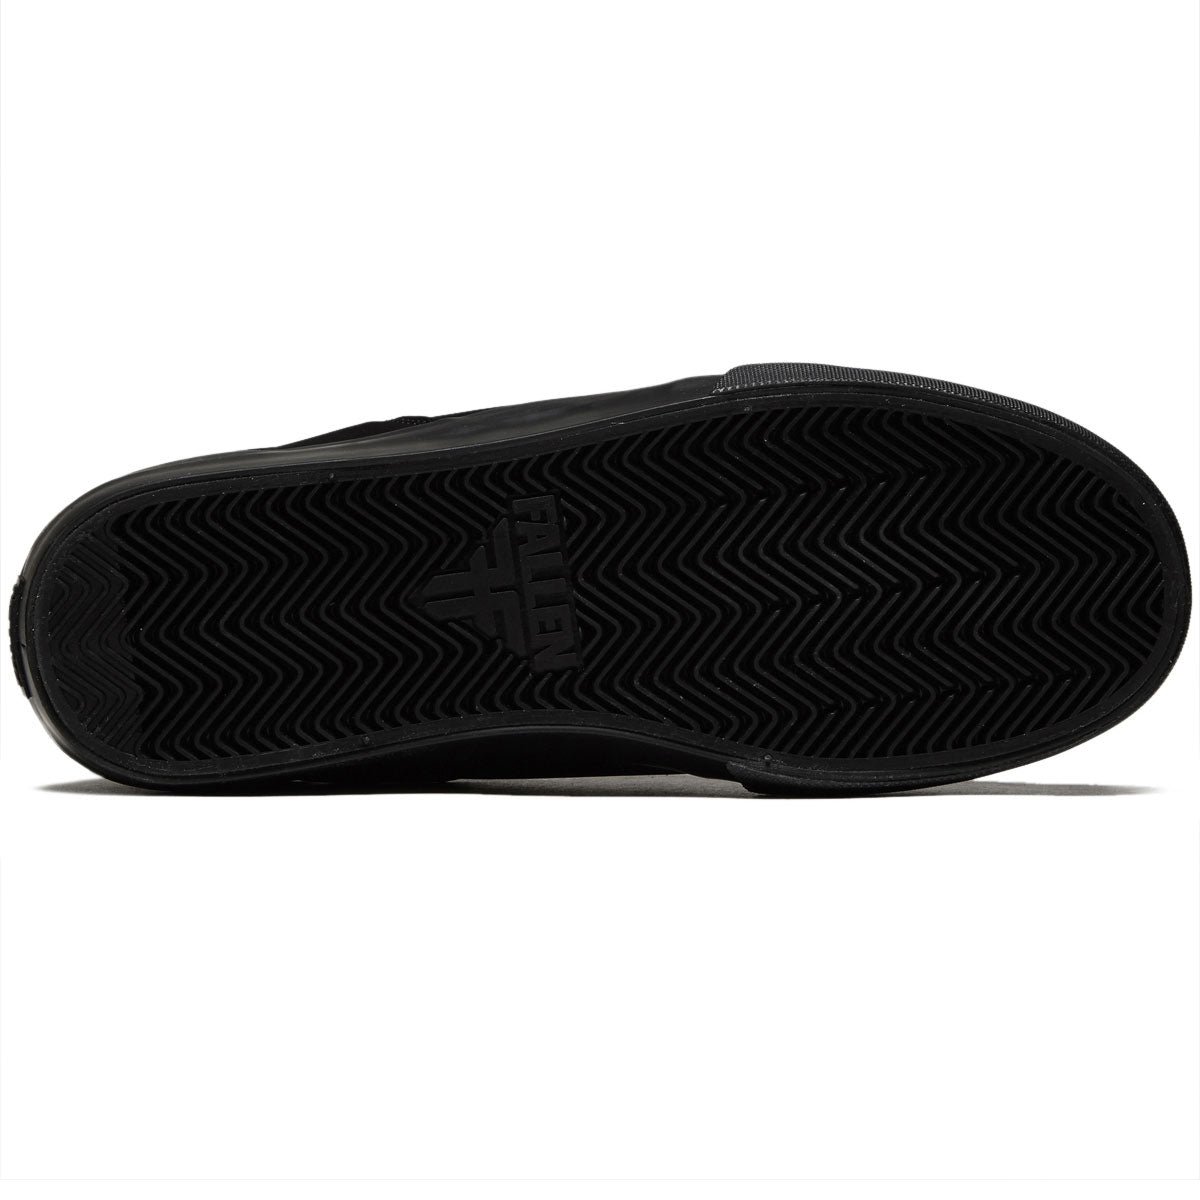 Fallen Ripper Chris Cole Shoes - Black/Black image 4